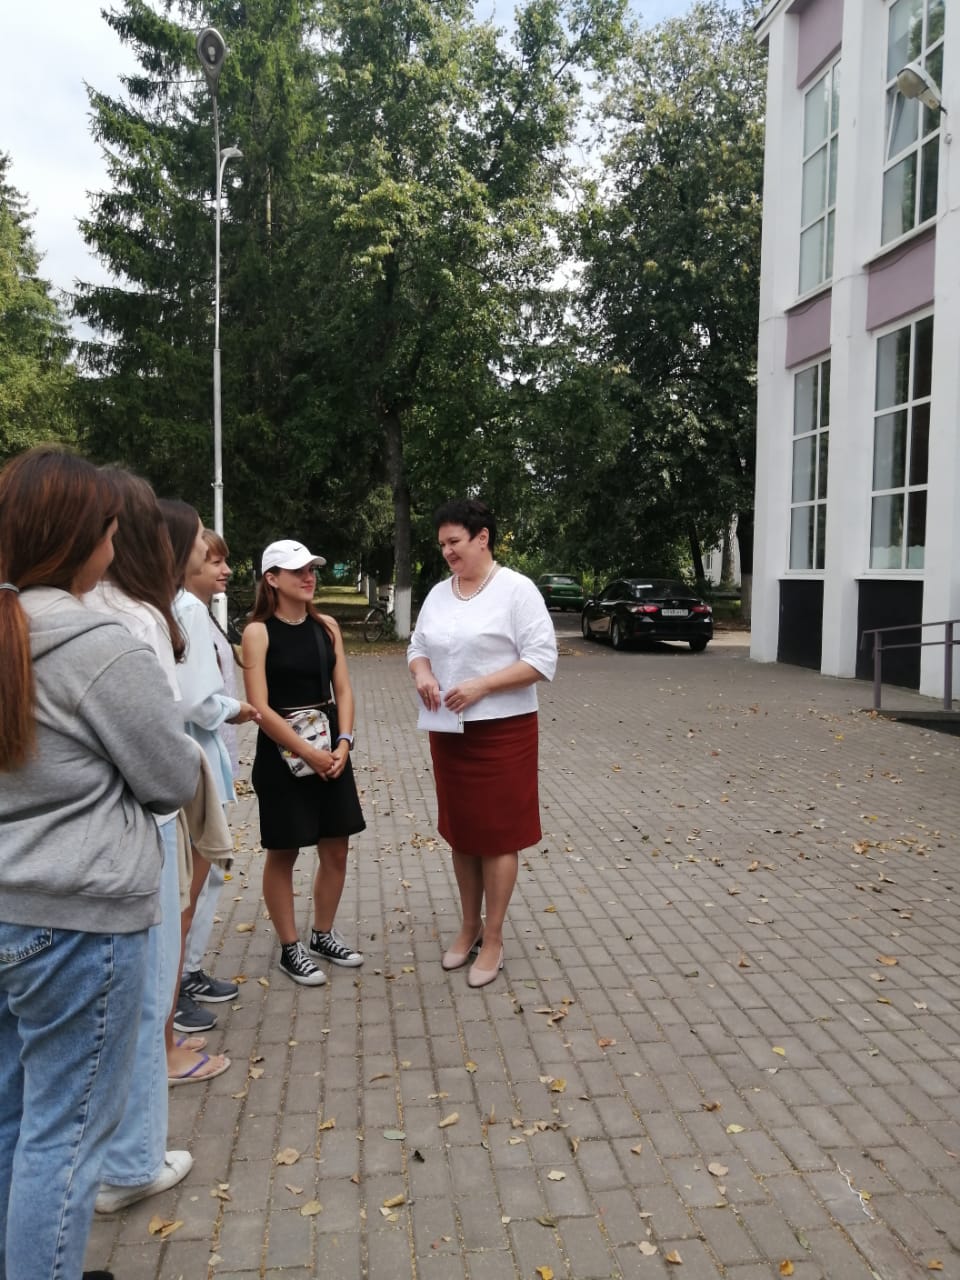 В Жуковке Брянской области за 10 миллионов рублей модернизируют библиотеку